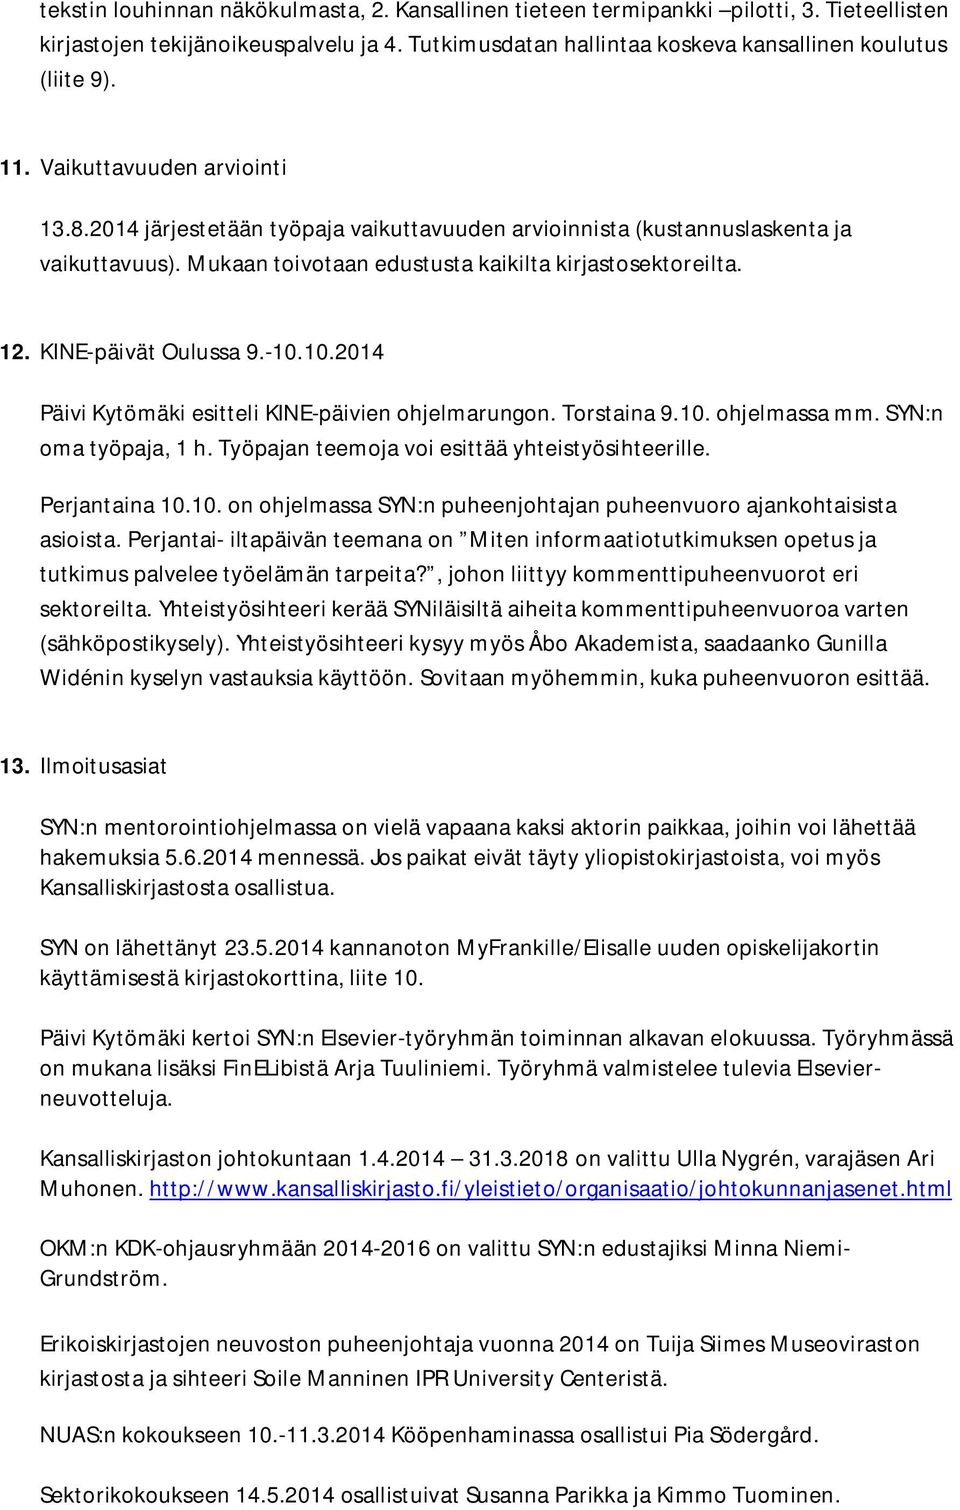 KINE-päivät Oulussa 9.-10.10.2014 Päivi Kytömäki esitteli KINE-päivien ohjelmarungon. Torstaina 9.10. ohjelmassa mm. SYN:n oma työpaja, 1 h. Työpajan teemoja voi esittää yhteistyösihteerille.